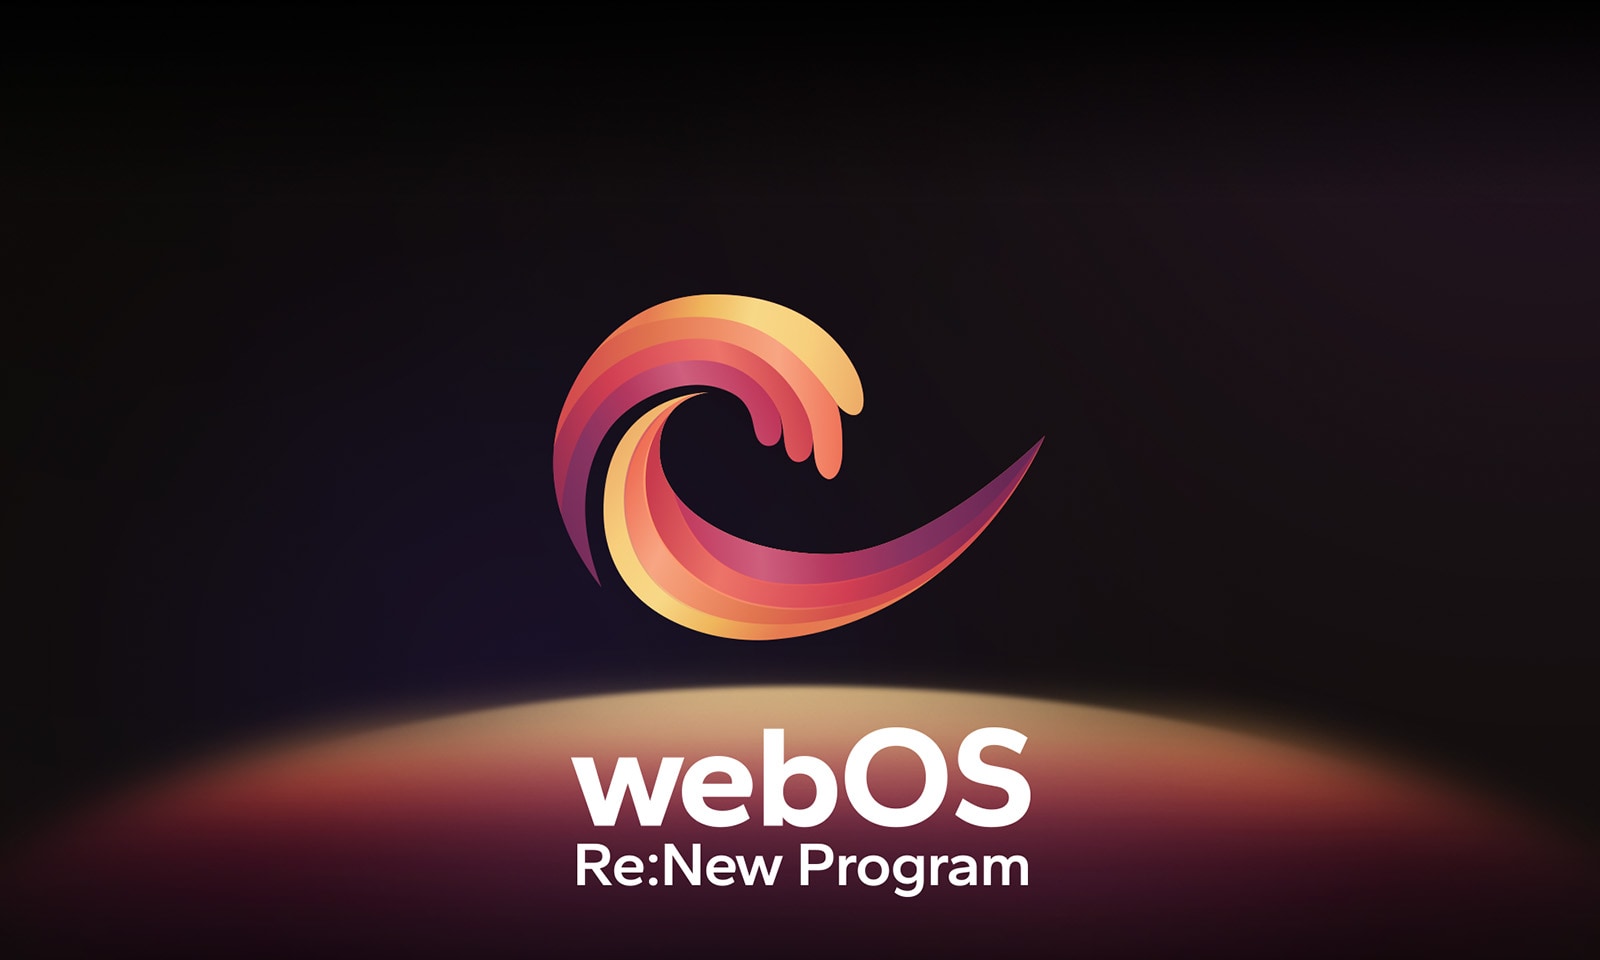 Slika logotipa webOS Re:New Program je vidna na črnem ozadju, z vrhom modre in vijolične okrogle krogle na dnu.